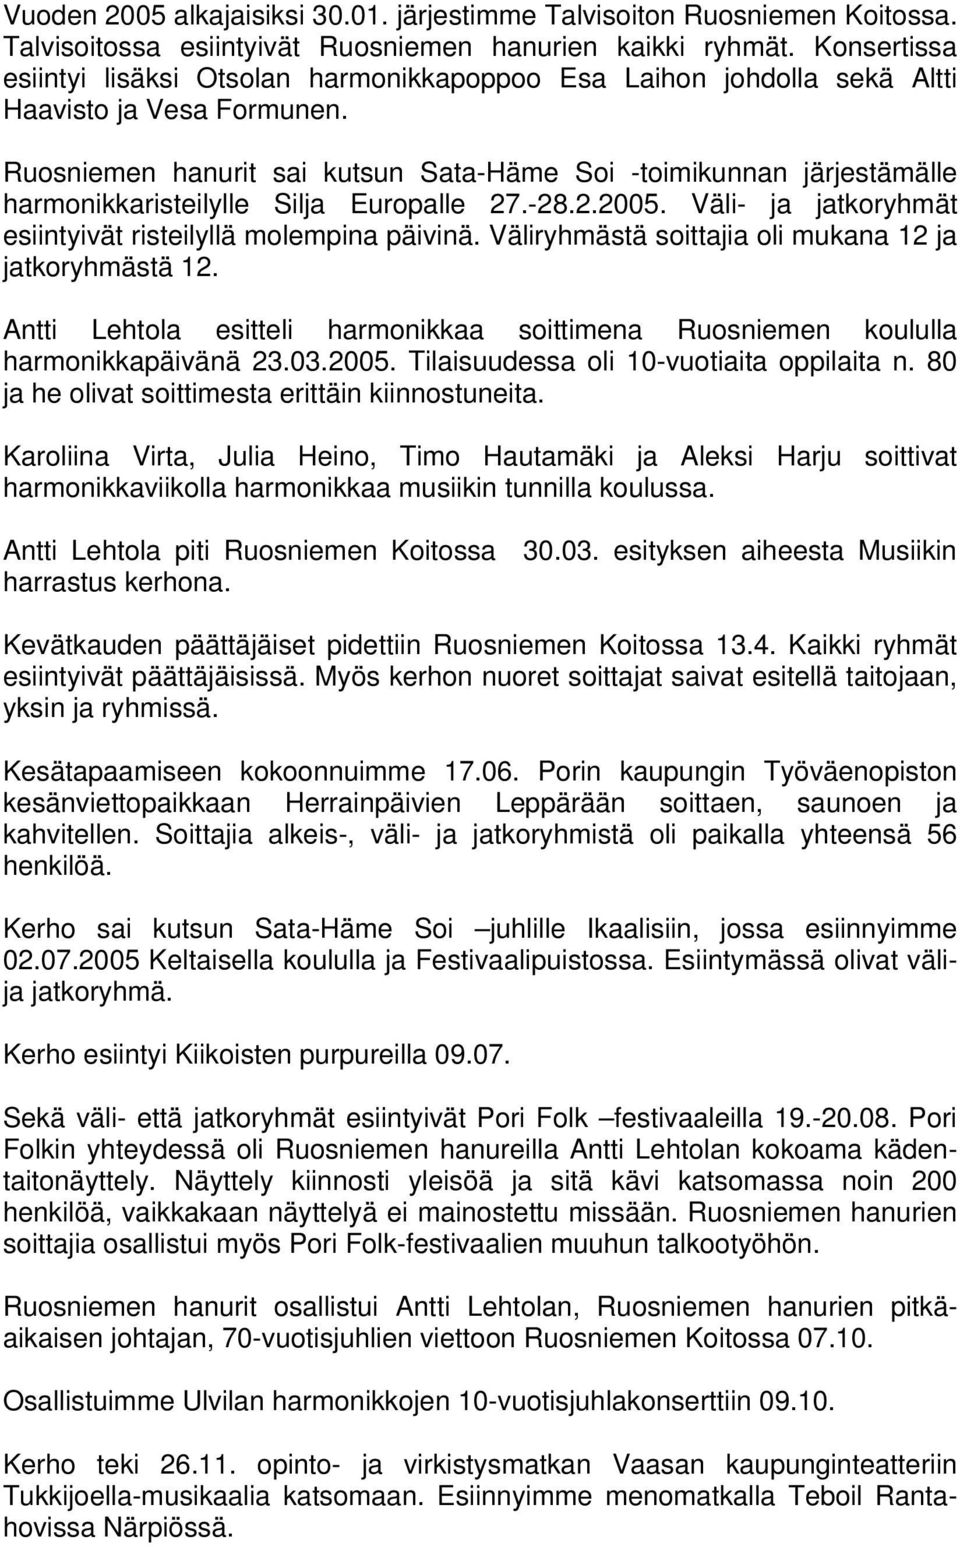 Ruosniemen hanurit sai kutsun Sata-Häme Soi -toimikunnan järjestämälle harmonikkaristeilylle Silja Europalle 27.-28.2.2005. Väli- ja jatkoryhmät esiintyivät risteilyllä molempina päivinä.